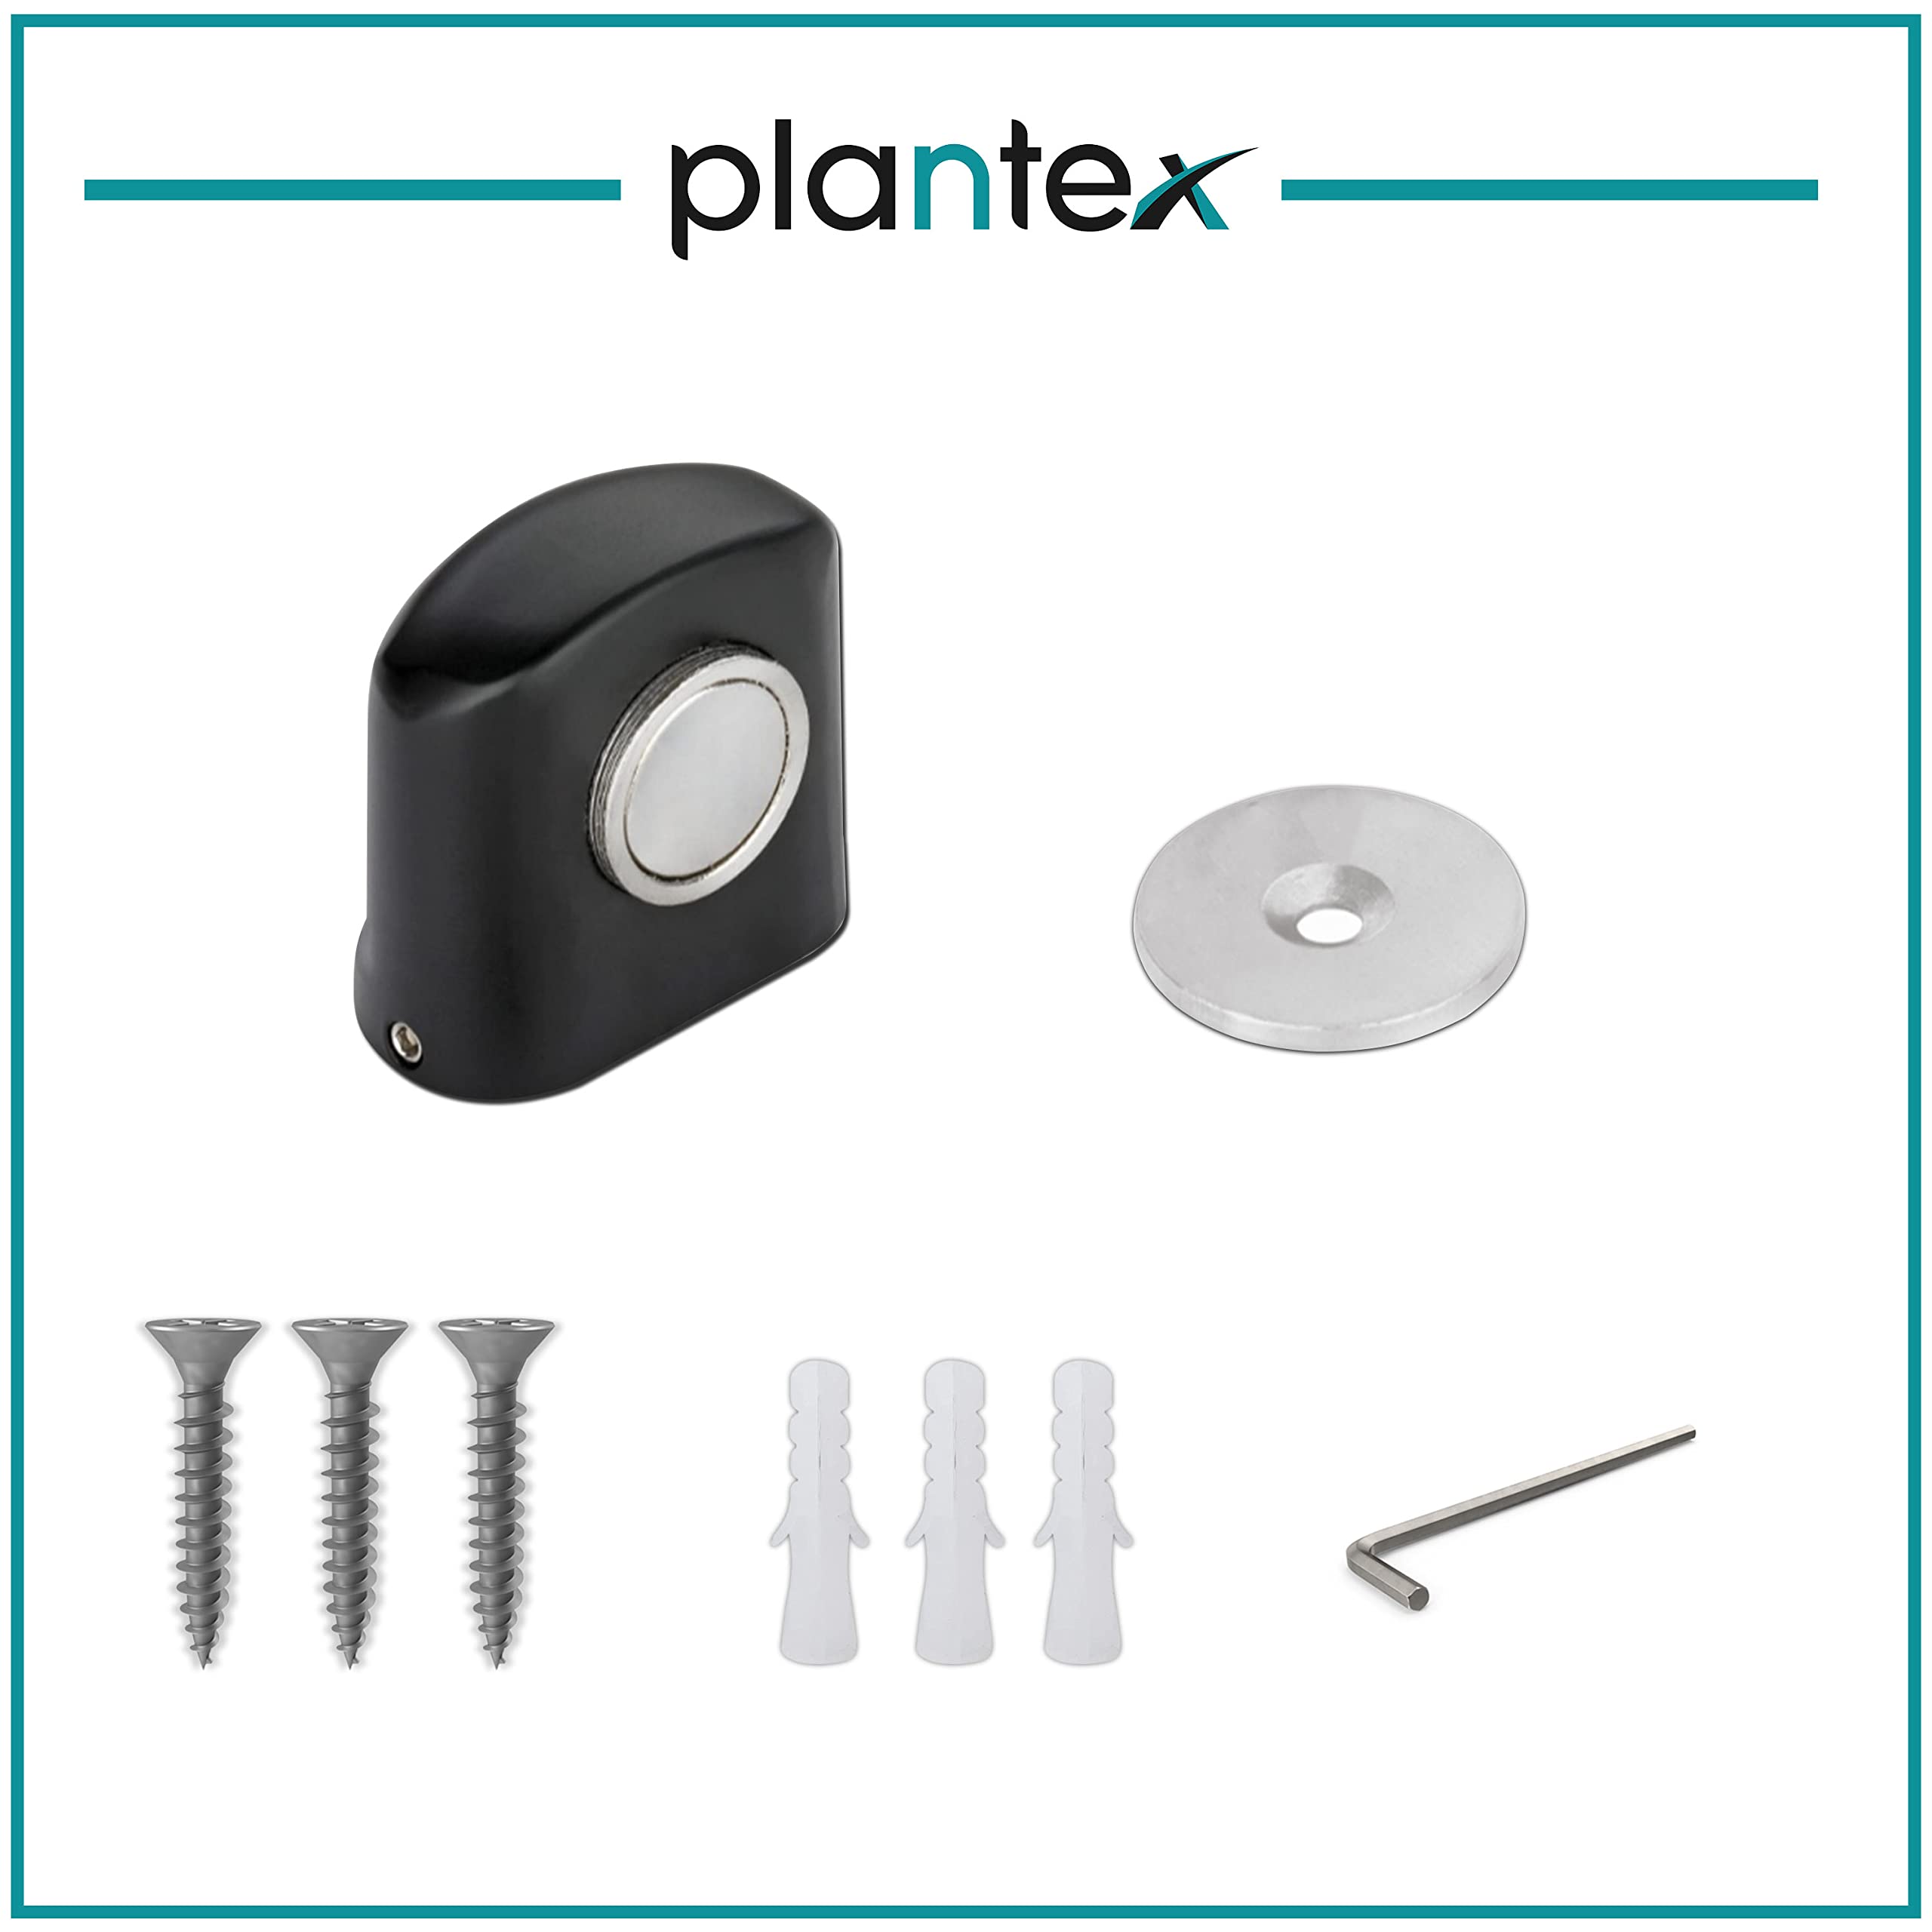 Plantex Heavy Duty Door Magnet Stopper/Door Catch Holder for Home/Office/Hotel, Floor Mounted Soft-Catcher to Hold Wooden/Glass/PVC Door - Pack of 20 (193 - Black)